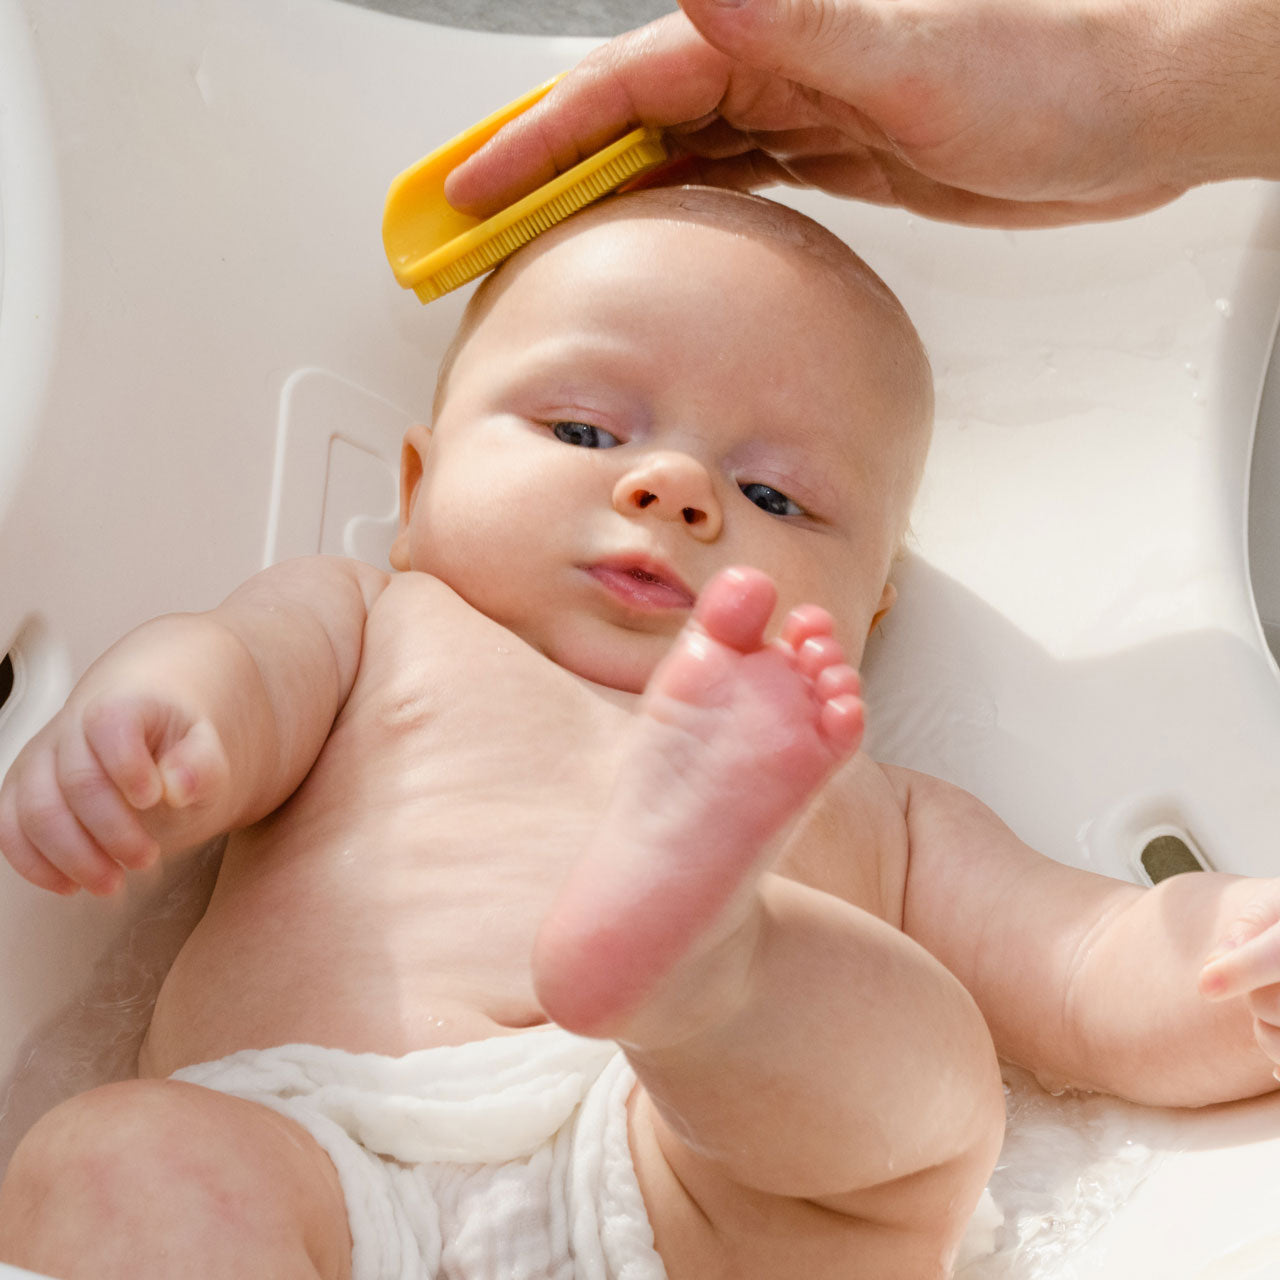 Applying Bye-Bye Cradle Cap to baby's head in sink bath